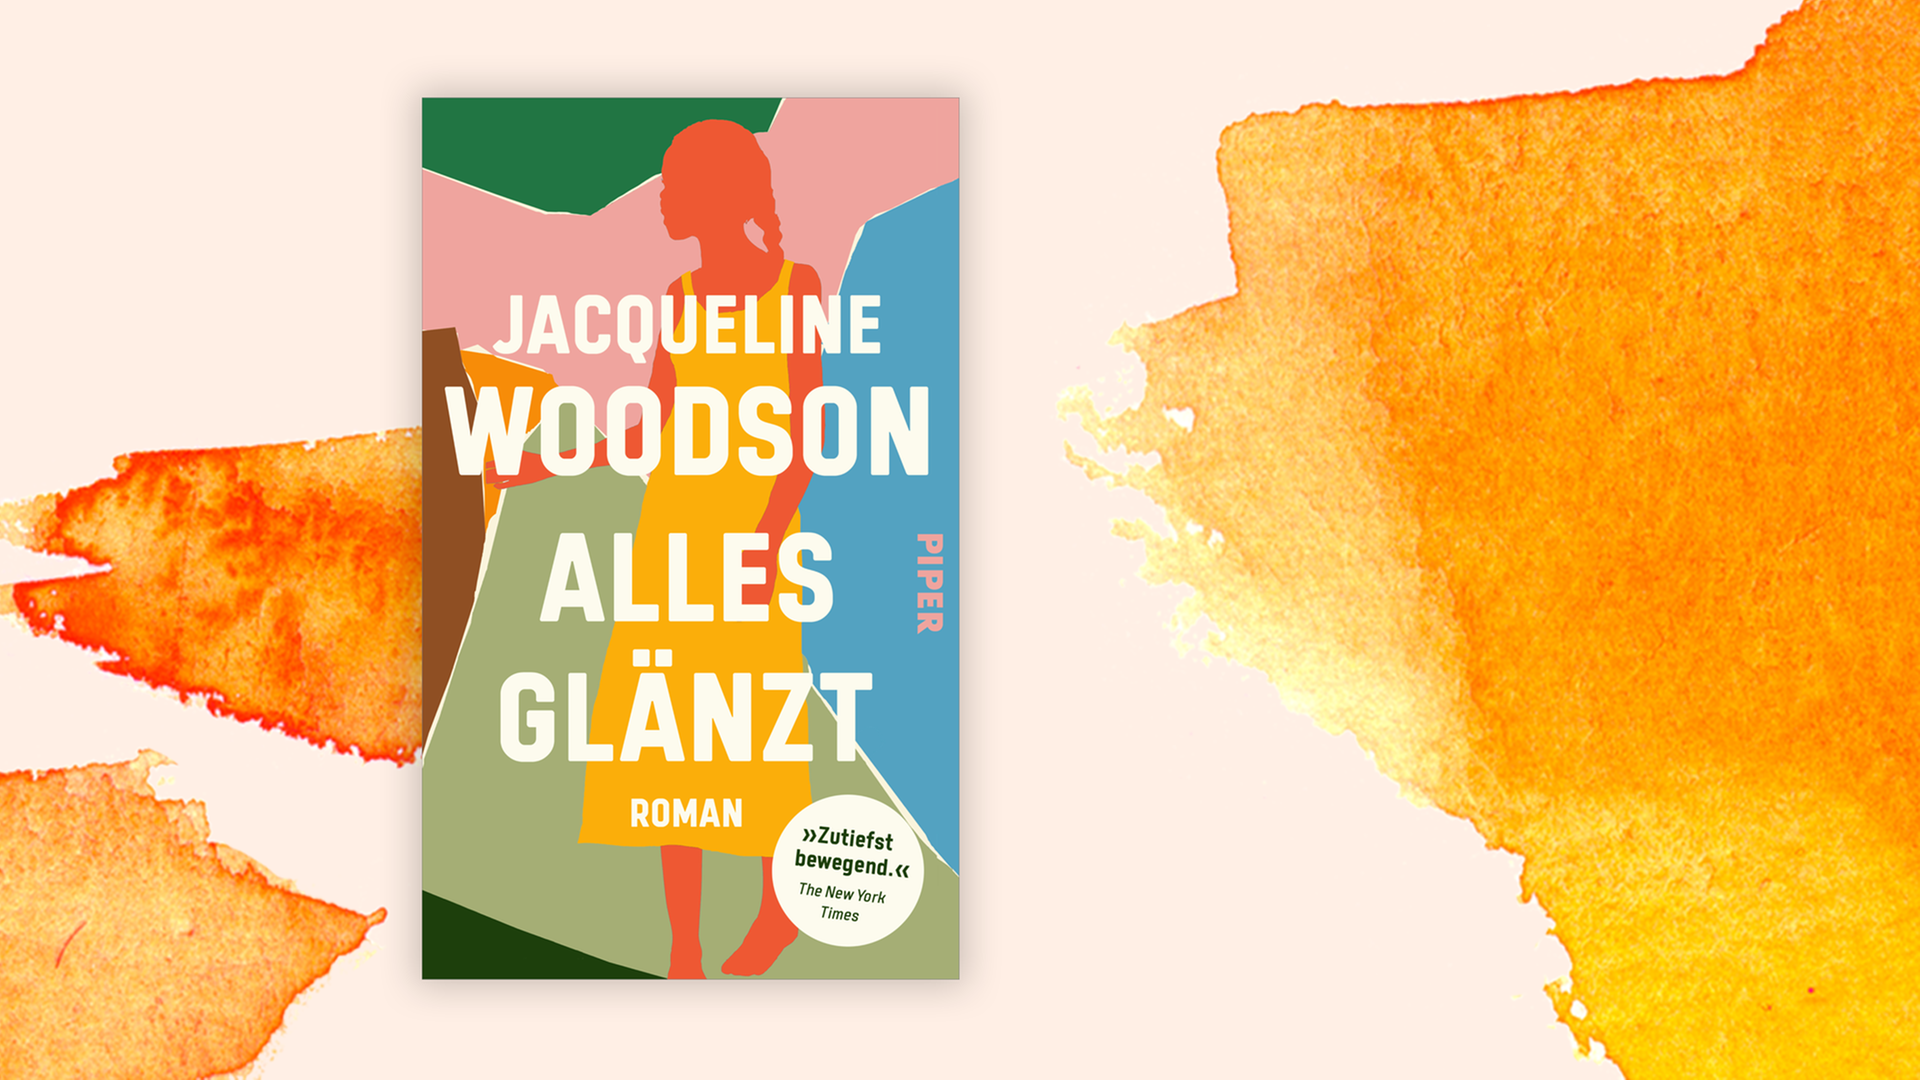 Zu sehen ist das Cover des Buches "Alles glänzt" von Jacqueline Woodson.